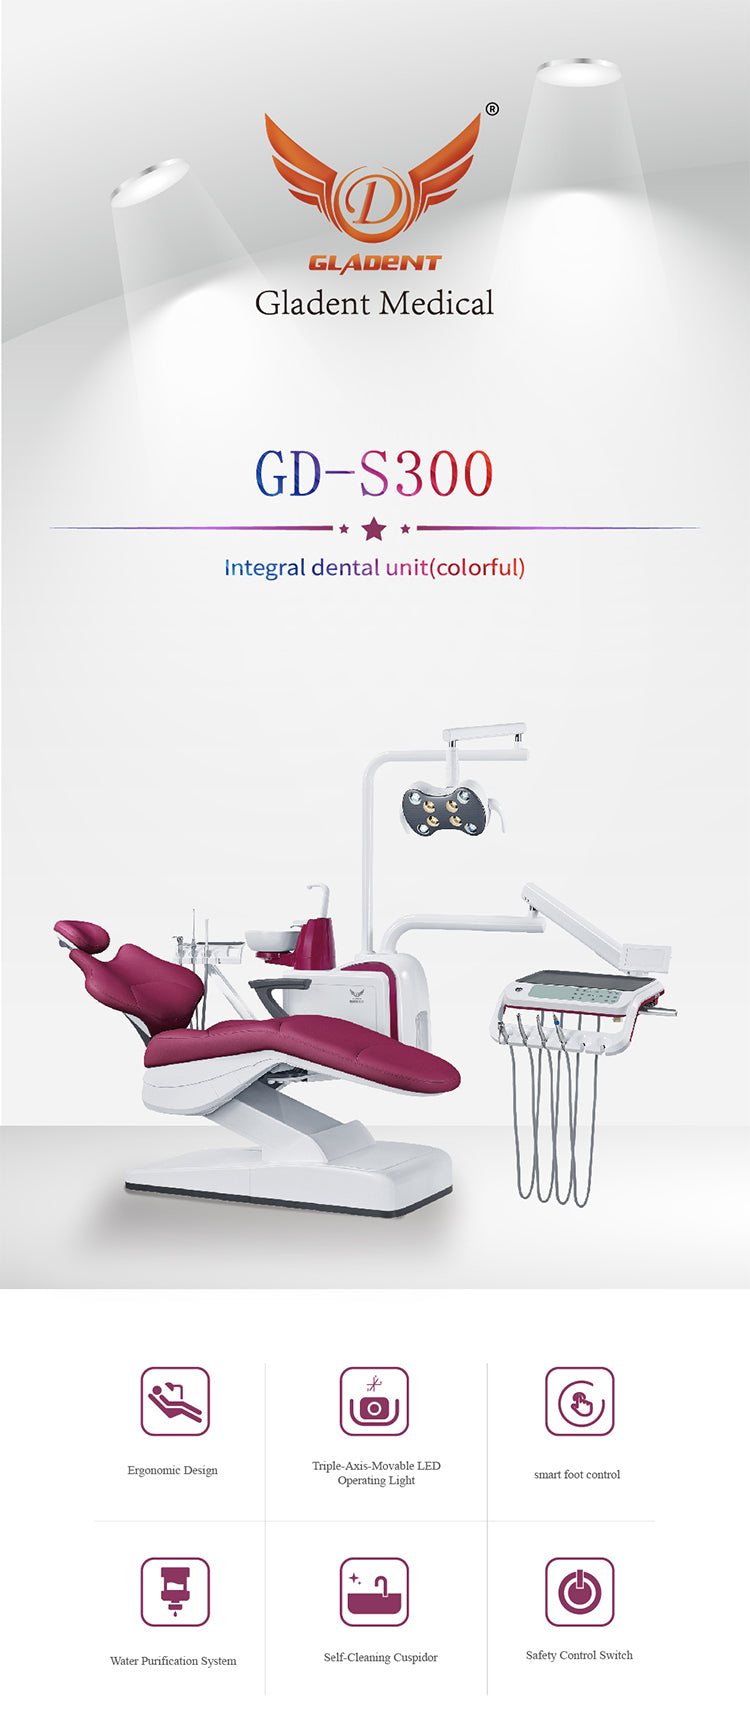 GD-S300 Colorful Dental Unit